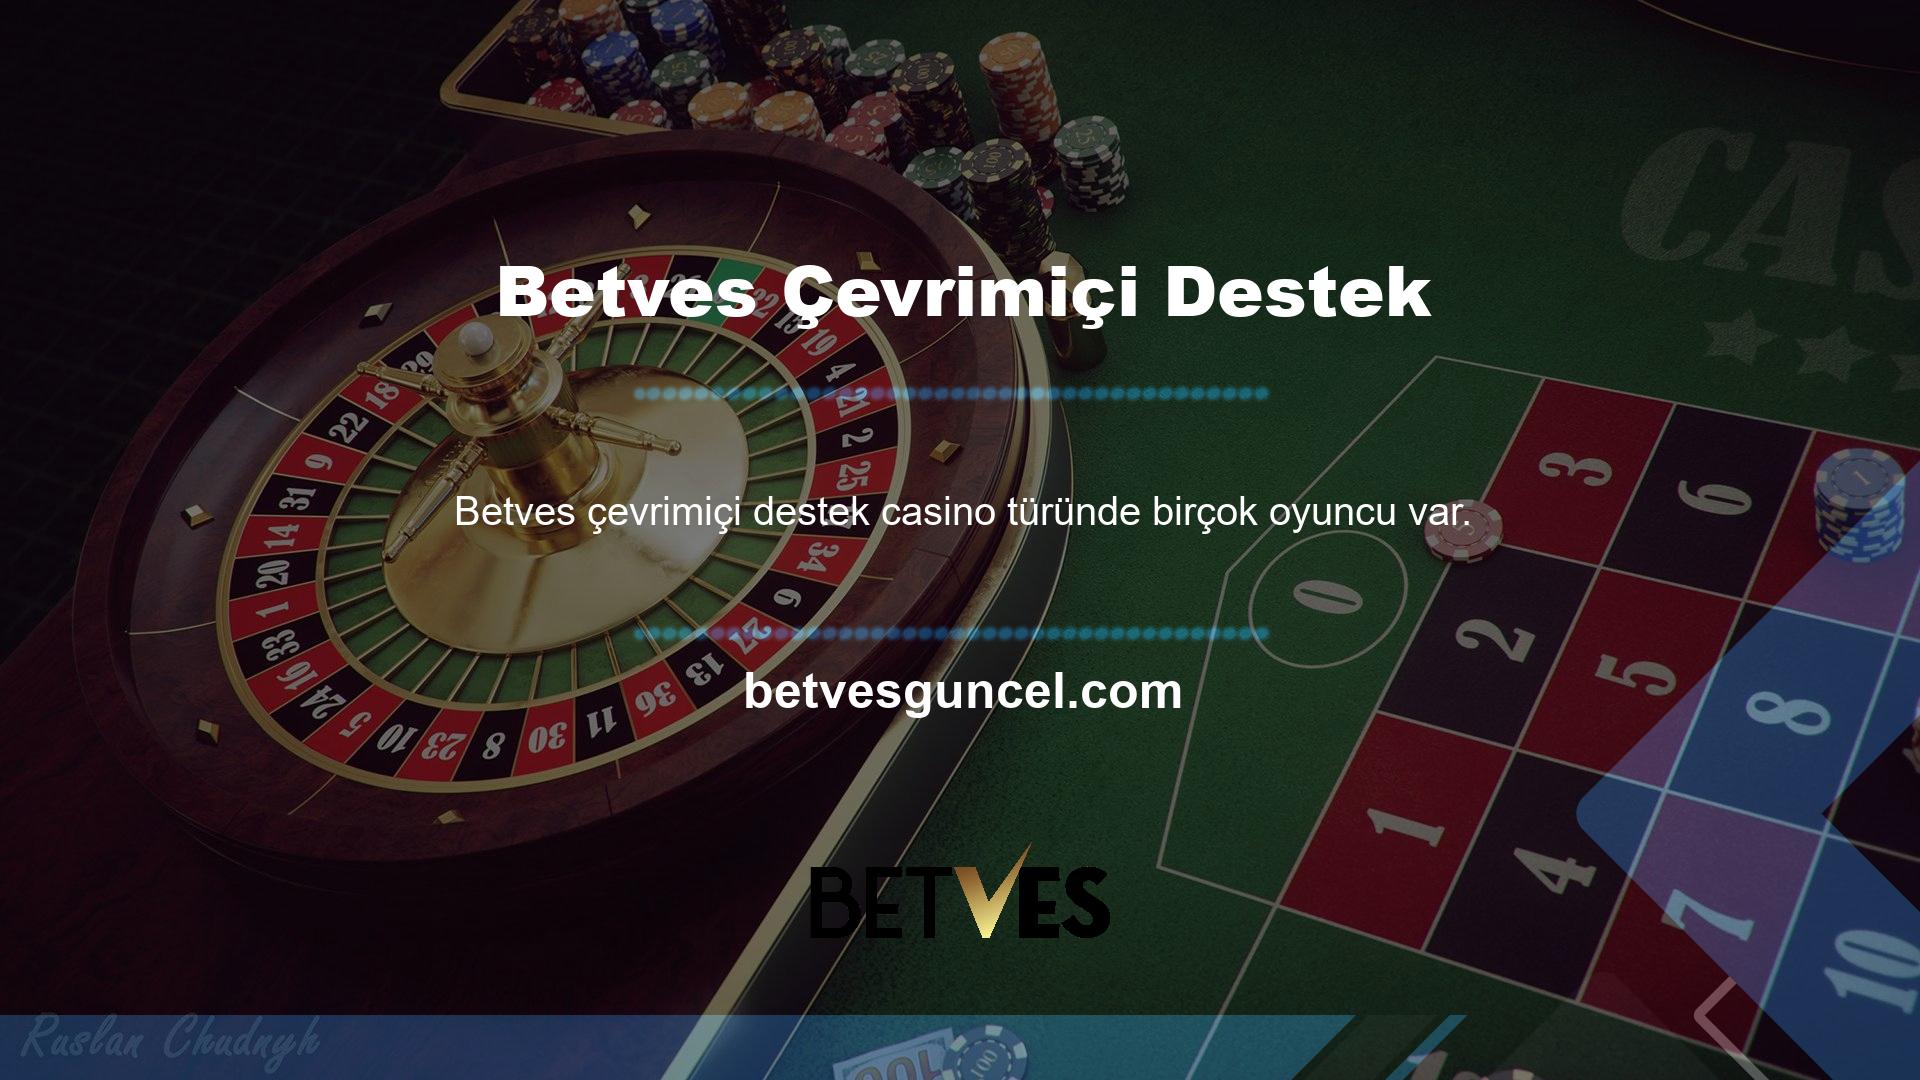 Ana sayfada yer alan Betves online destek kayıt ol butonuna ve casino menüsüne tıklayarak üye olabilirsiniz